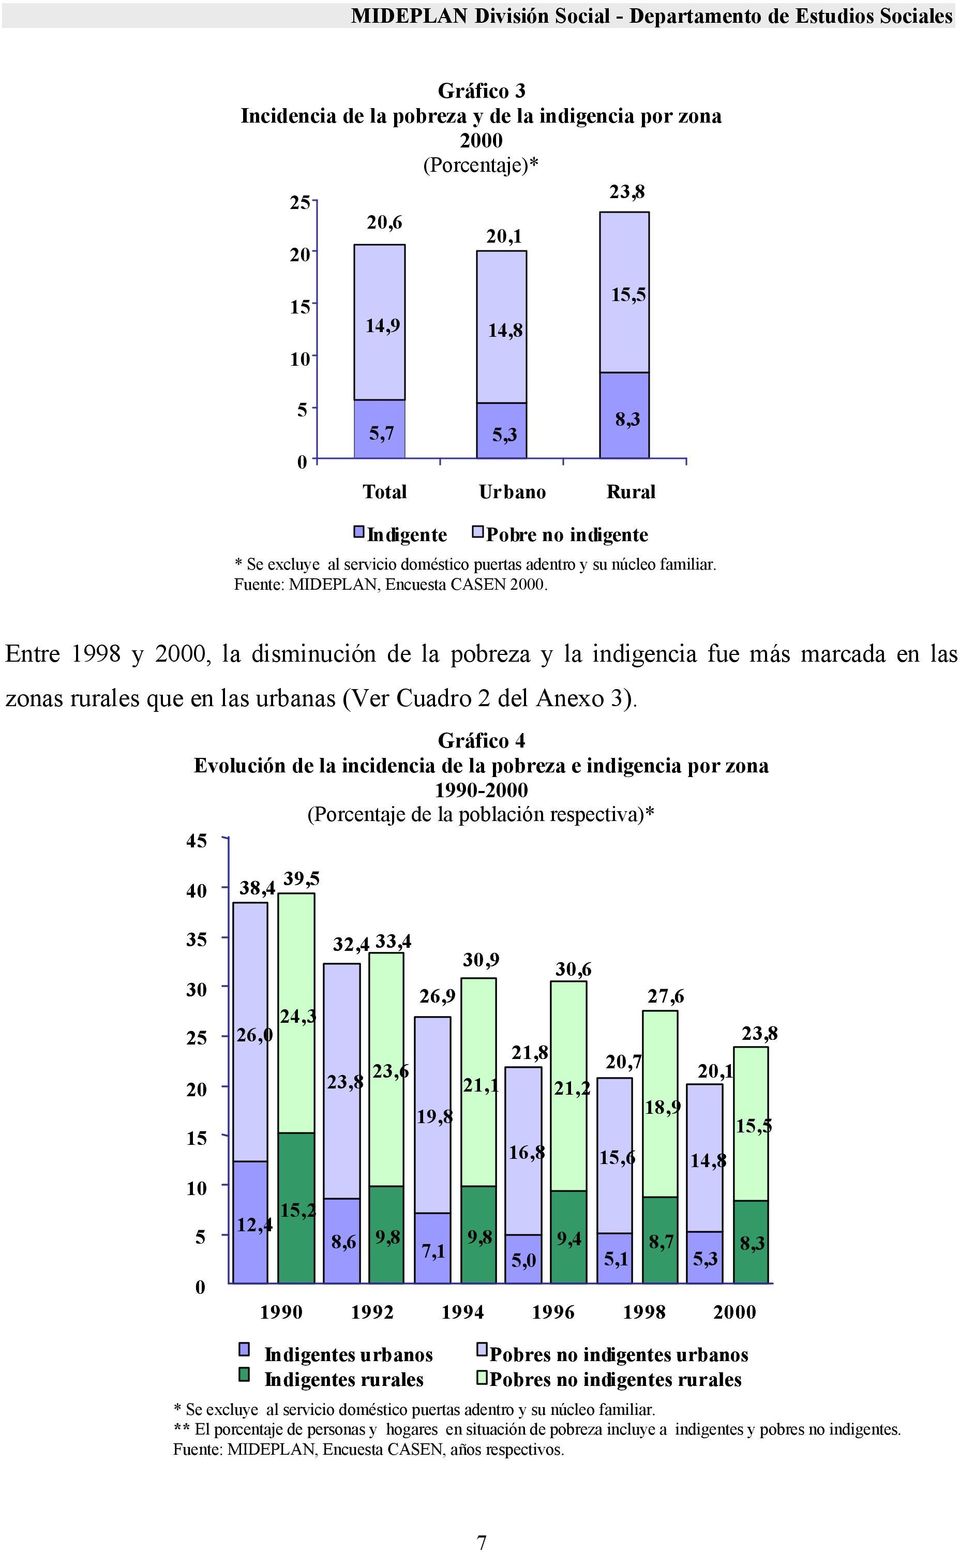 Entre 1998 y 2000, la disminución de la pobreza y la indigencia fue más marcada en las zonas rurales que en las urbanas (Ver Cuadro 2 del Anexo 3).